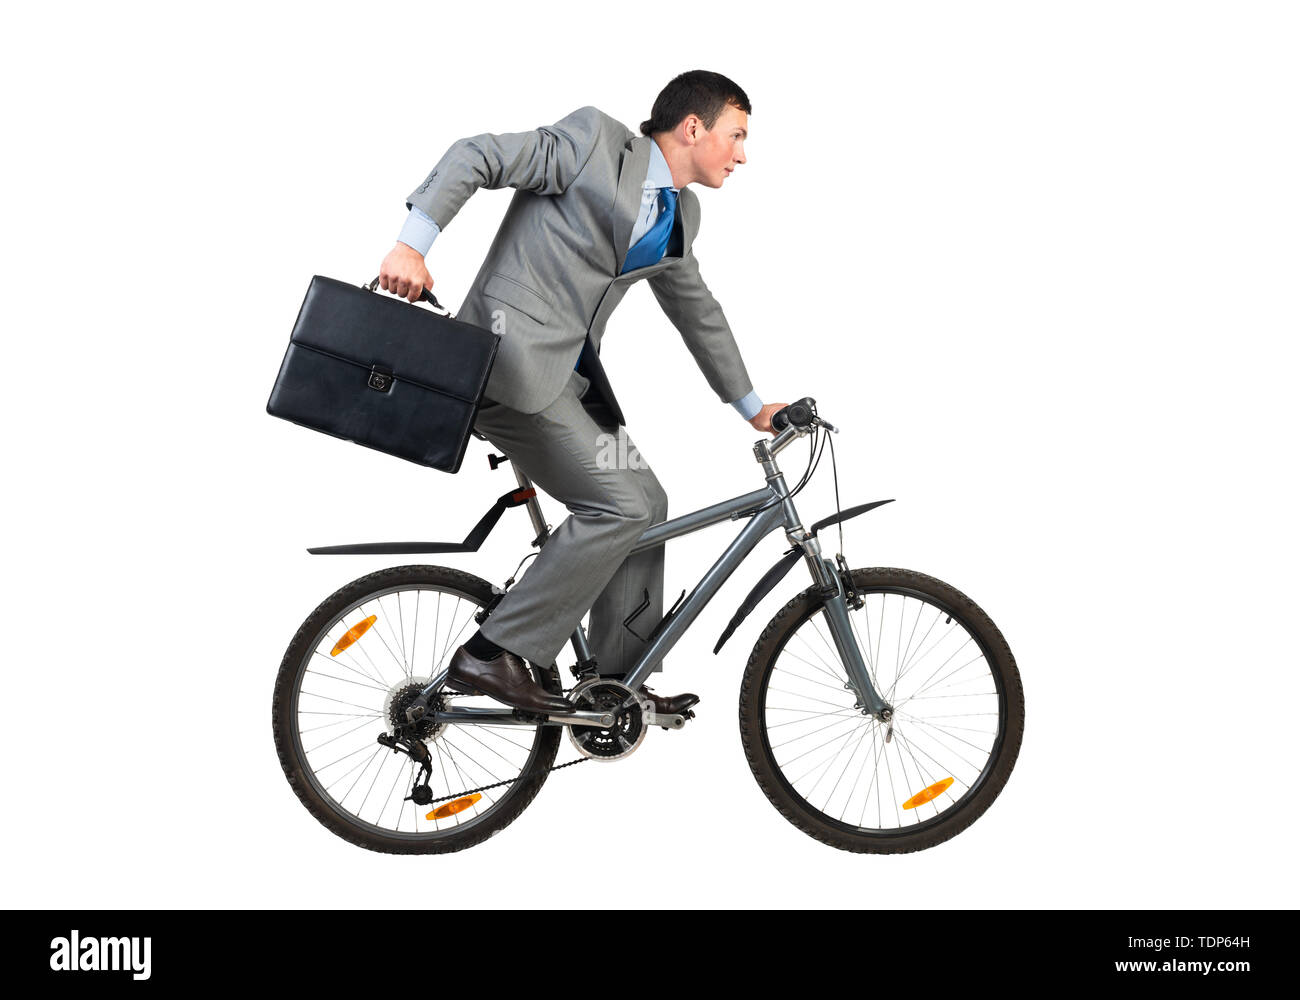 Geschäftsmann auf dem Fahrrad hast zu arbeiten. Junger Mann Angst, zu spät zu kommen. Mitarbeiter im grauen Anzug mit Koffer Reiten Fahrrad. Männliche Radfahrer Stockfoto